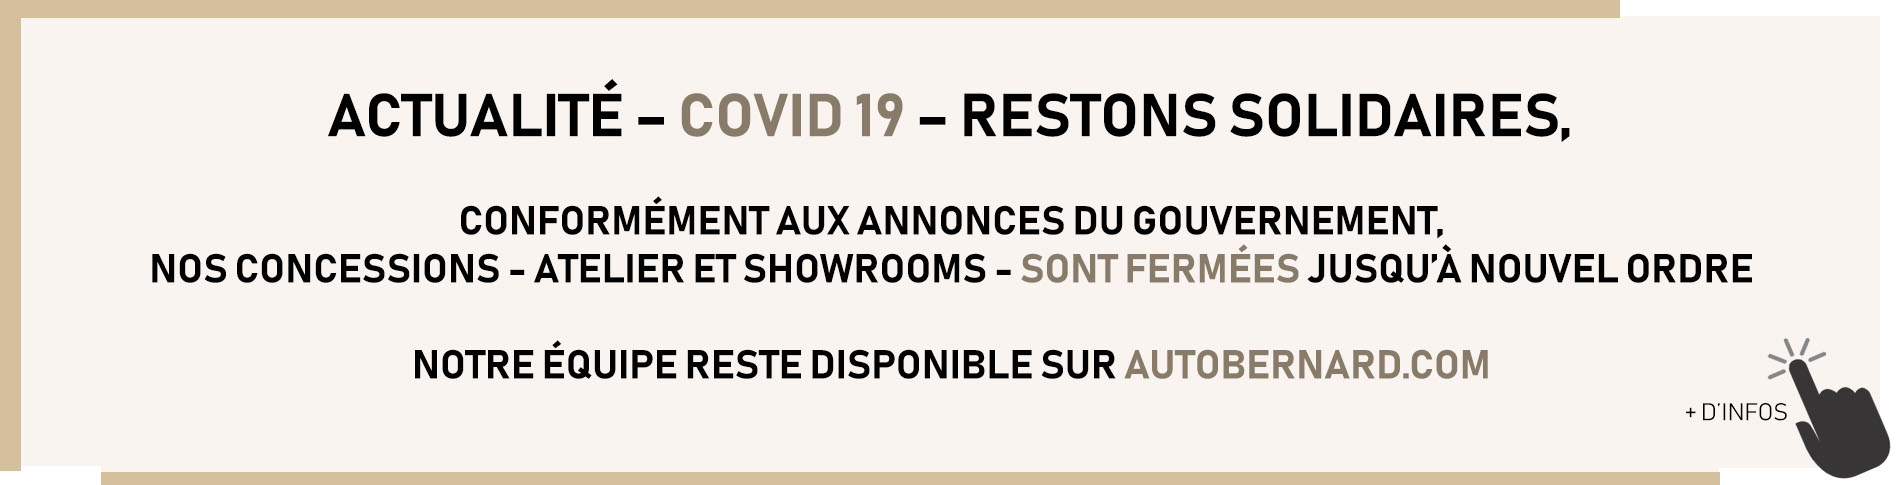 Actualité - COVID-19